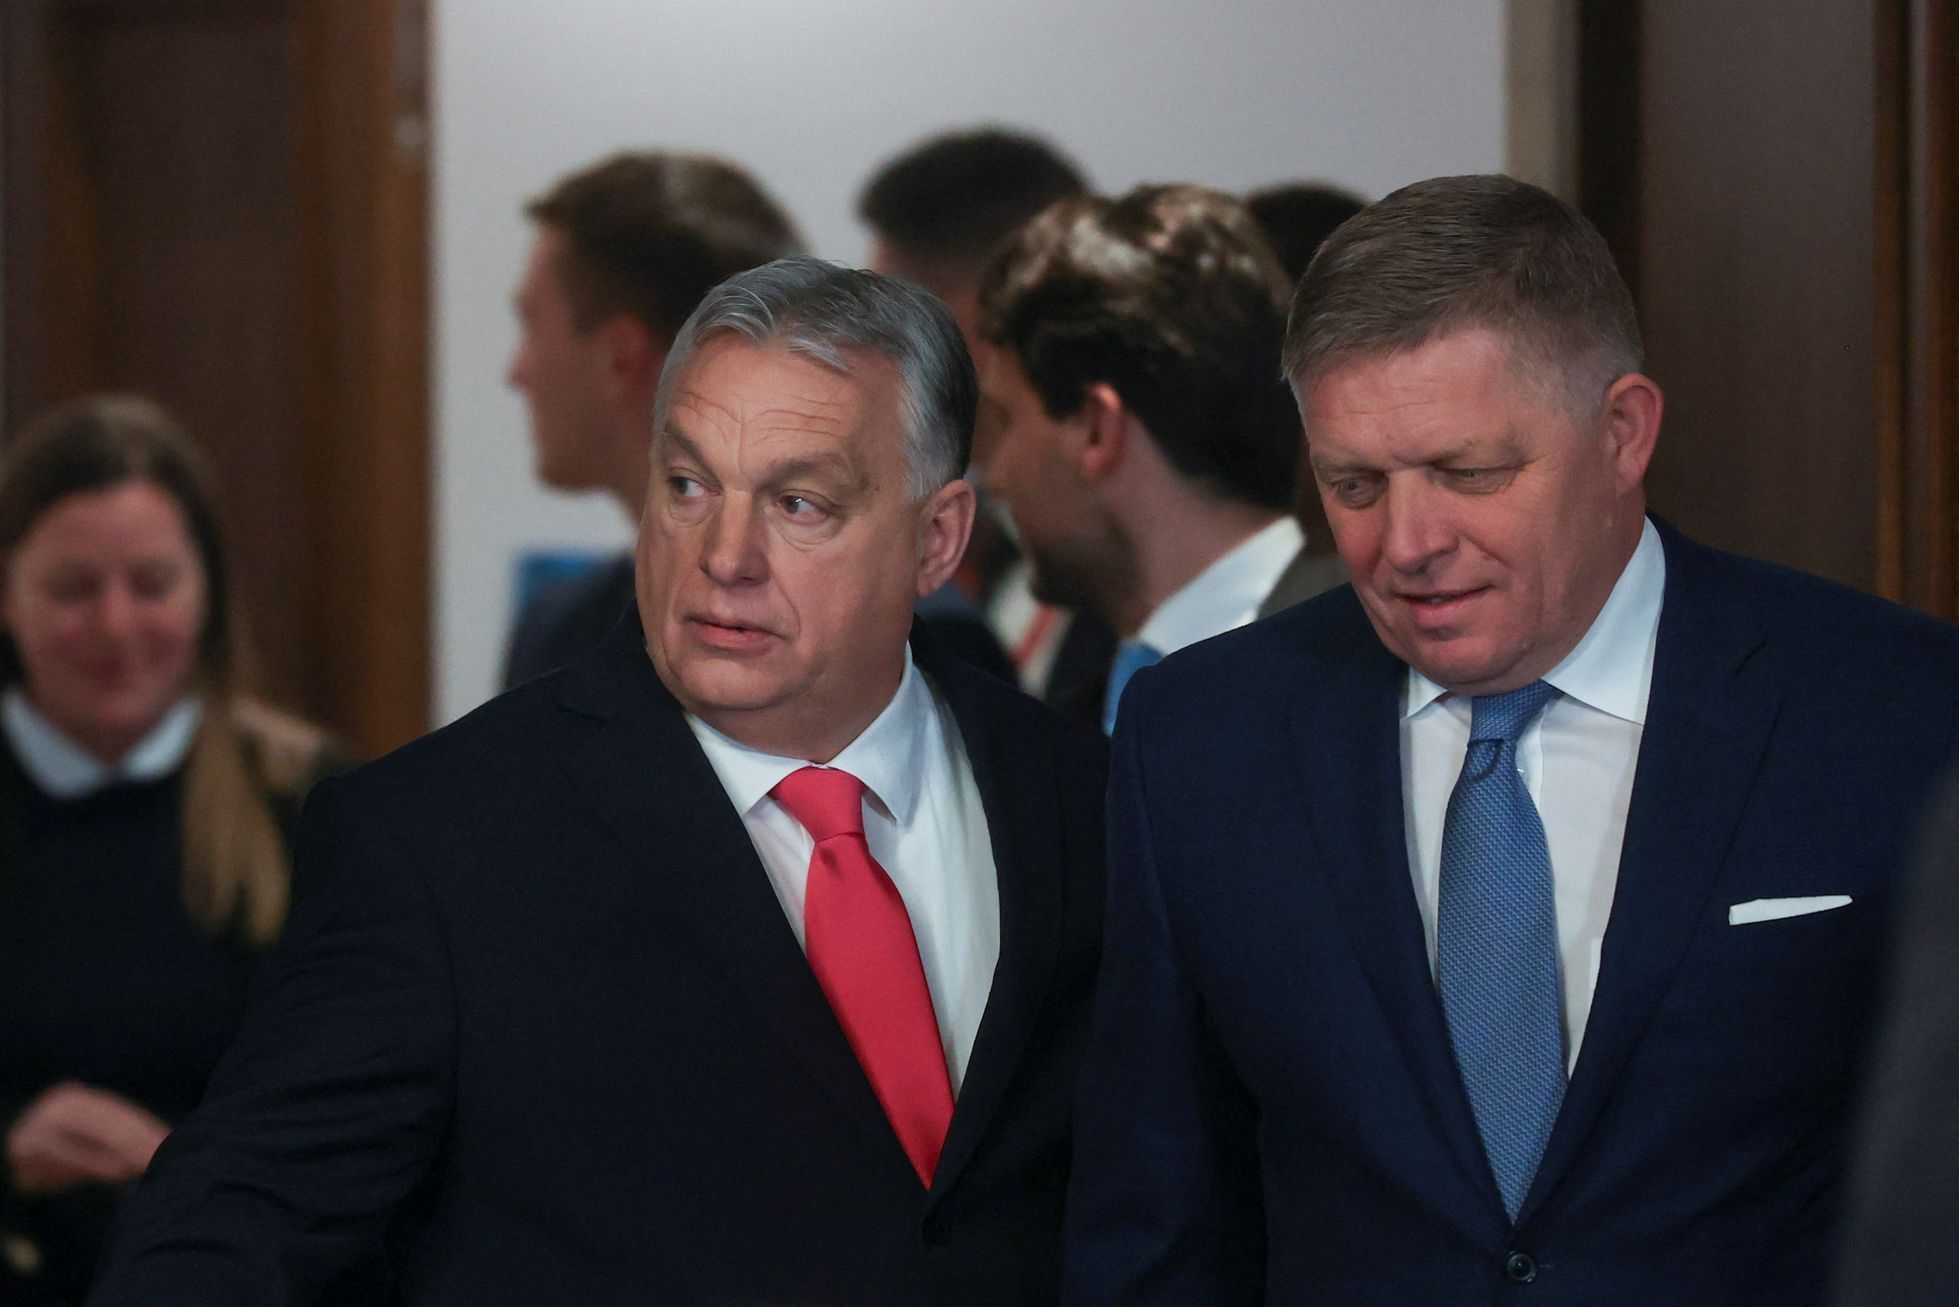 Fico Orbán